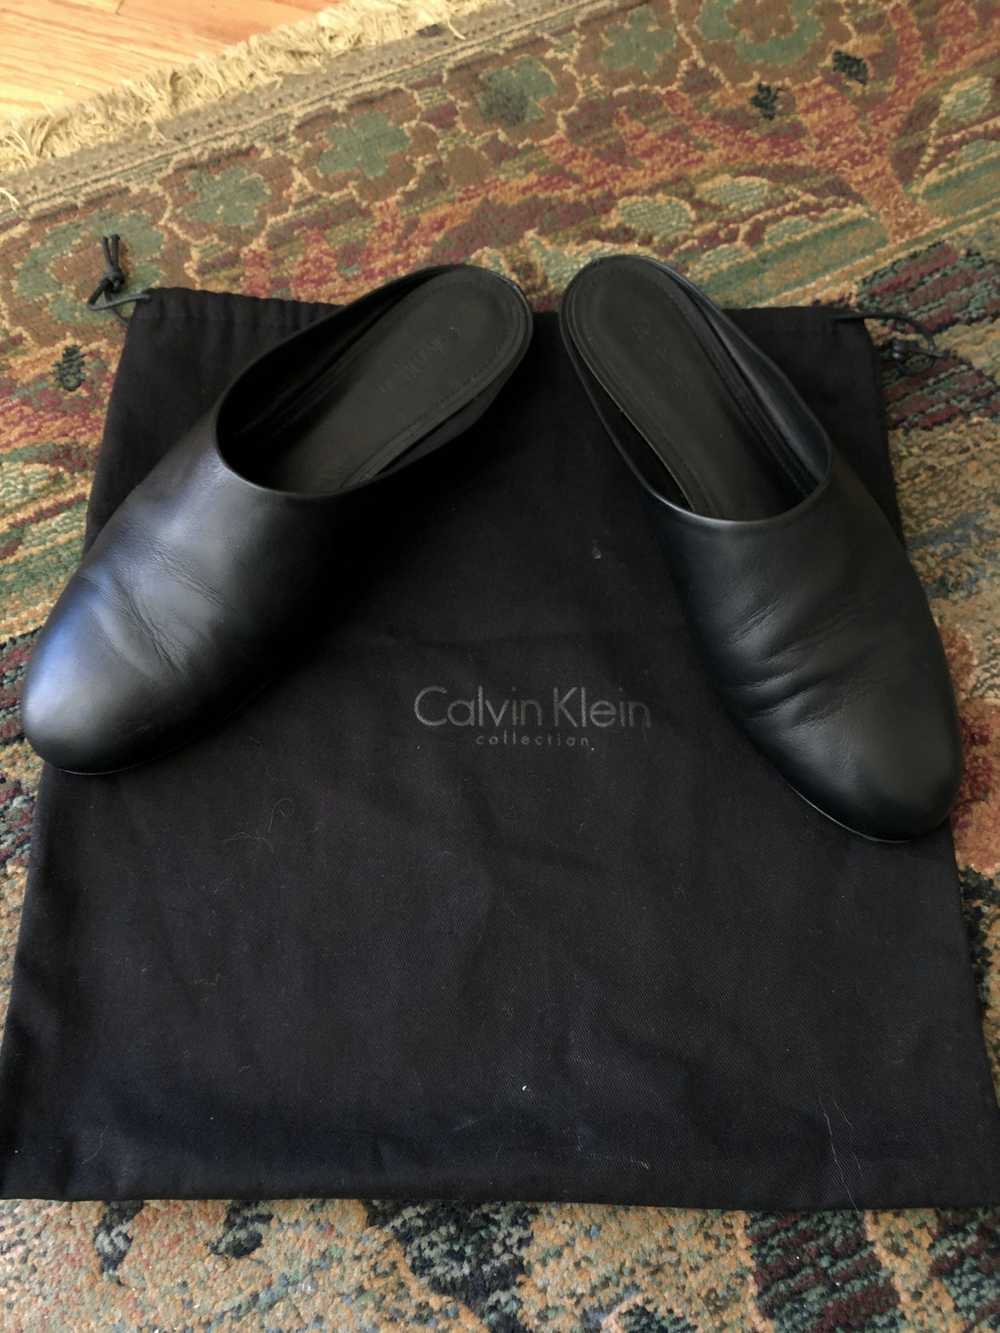 Calvin Klein Calvin Klein Collection Mules - image 5